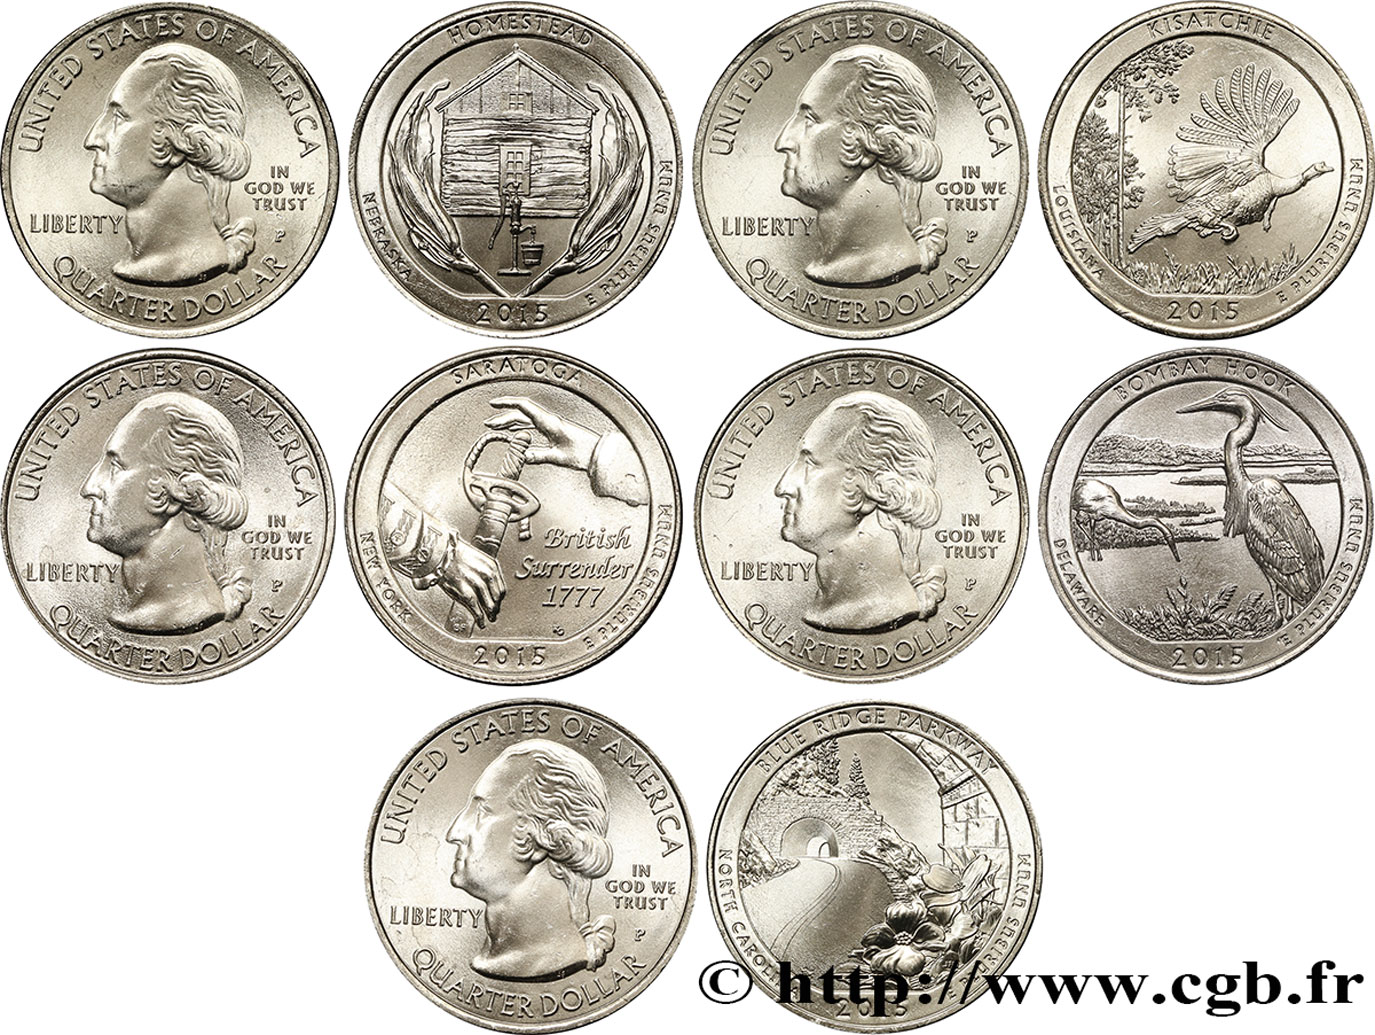 ÉTATS-UNIS D AMÉRIQUE Série complète des 5 monnaies de 1/4 de Dollar 2015 2015 Philadelphie - P SPL 